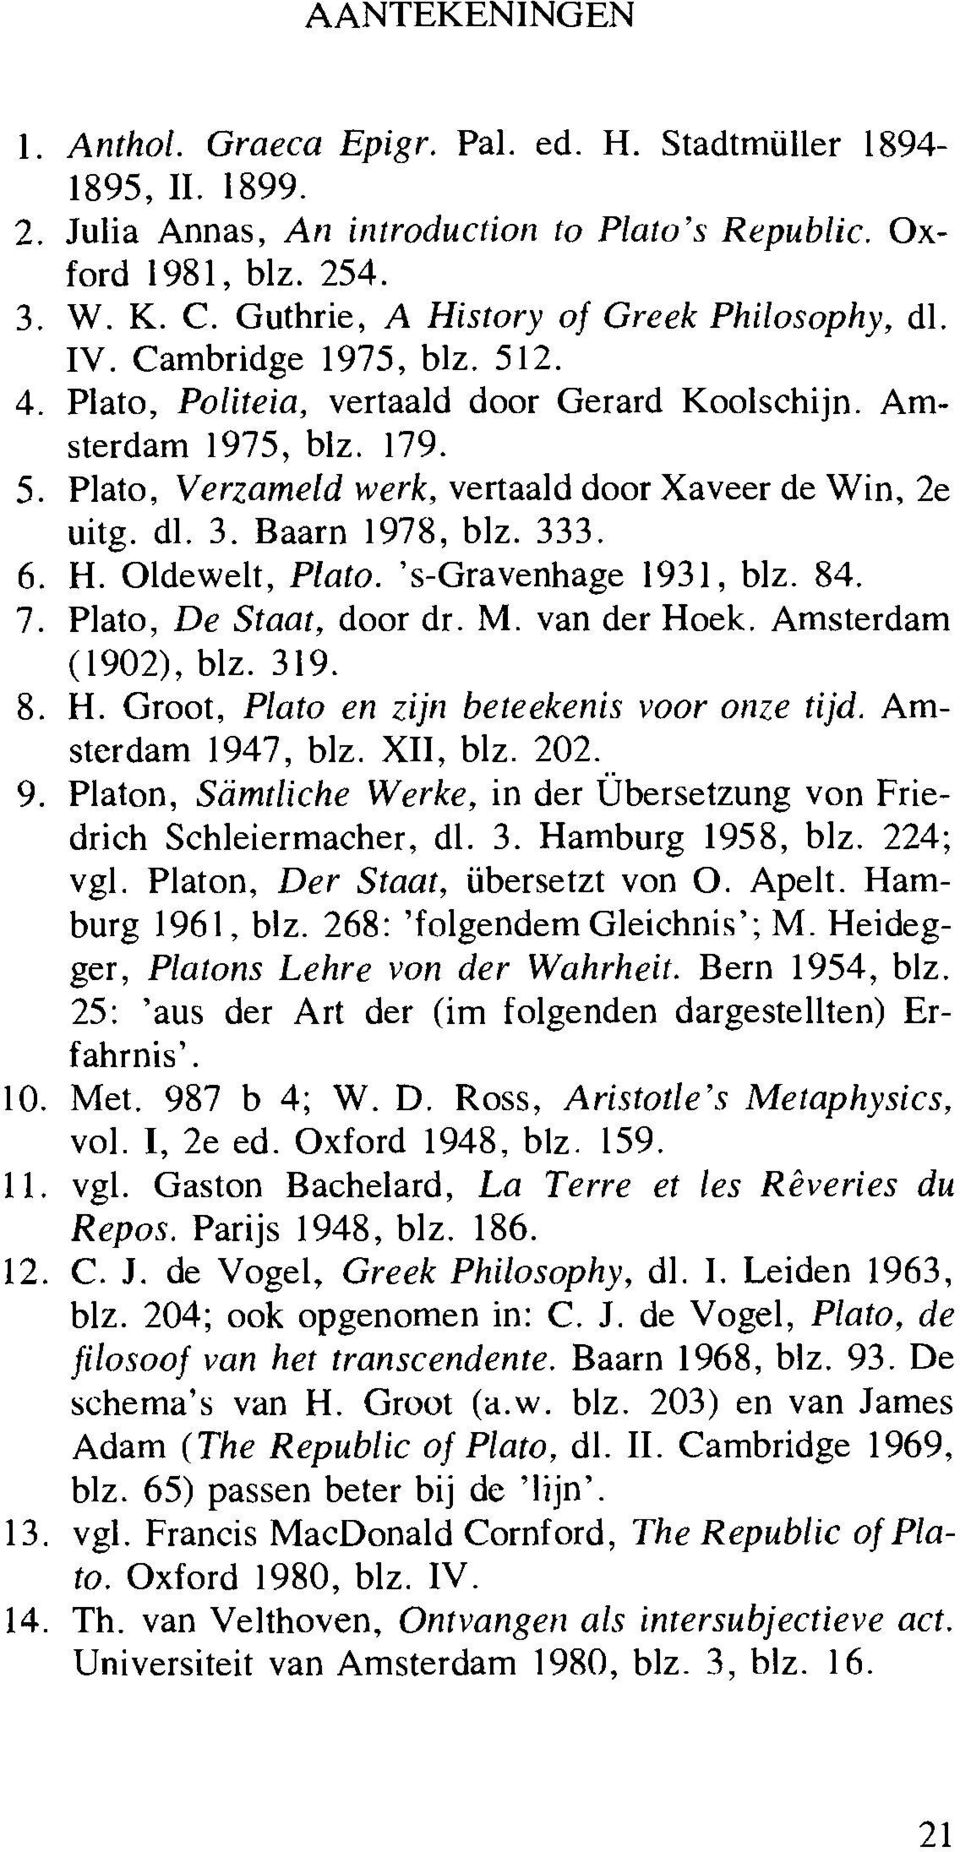 dl. 3. Baarn 1978, blz. 333. 6. H. Oldewelt, Plato. 's-gravenhage 1931, blz. 84. 7. Plato, De Staat, door dr. M. van der Hoek. Amsterdam (1902), blz. 319. 8. H. Groot, Plato en zijn beteekenis voor onze tijd.